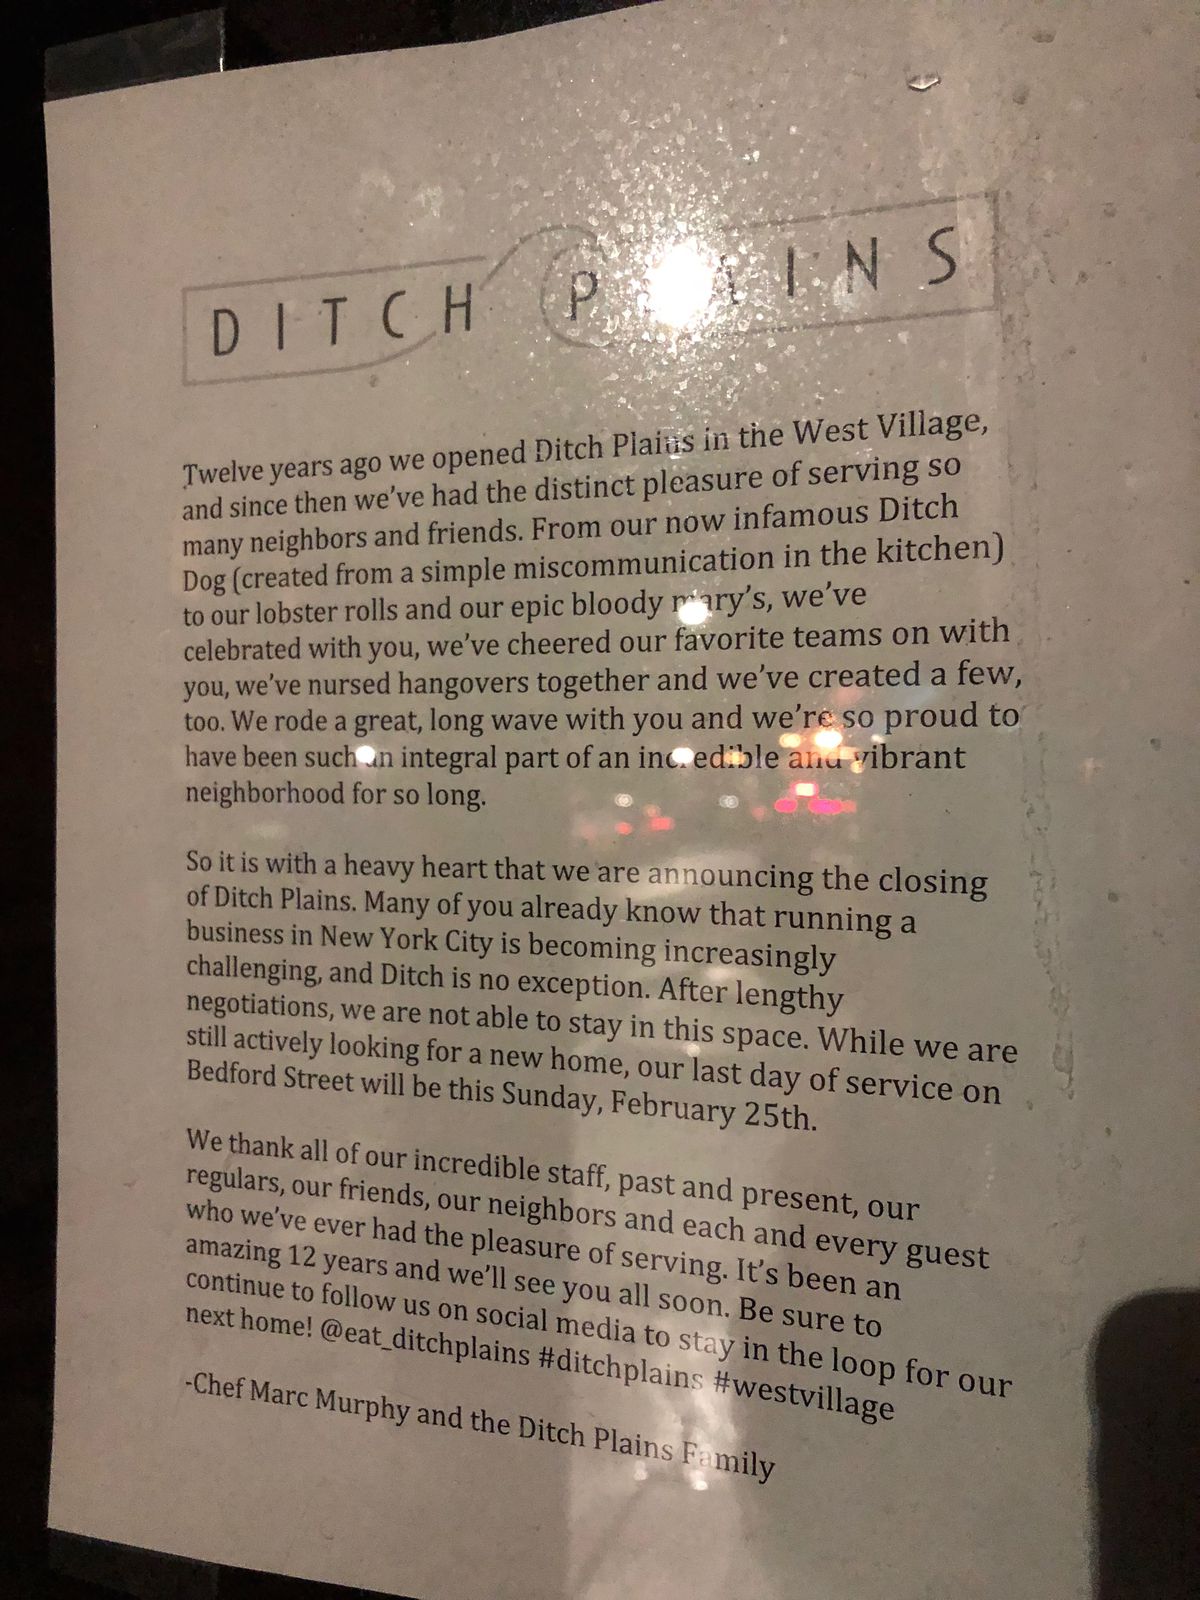 Ditch Plains closure notice